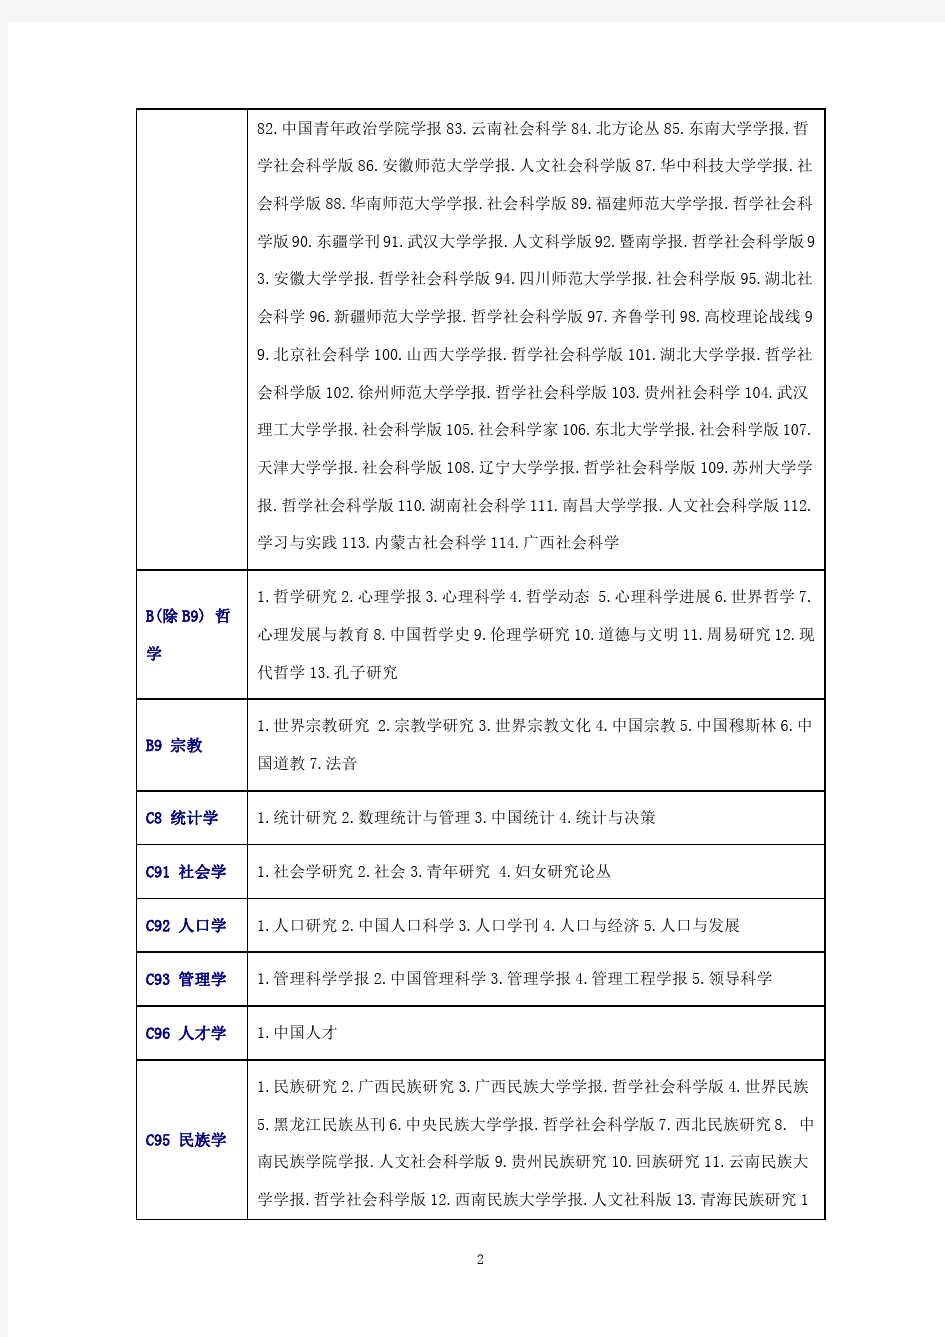 2015中文核心期刊要目总览(北京大学收录完整版)